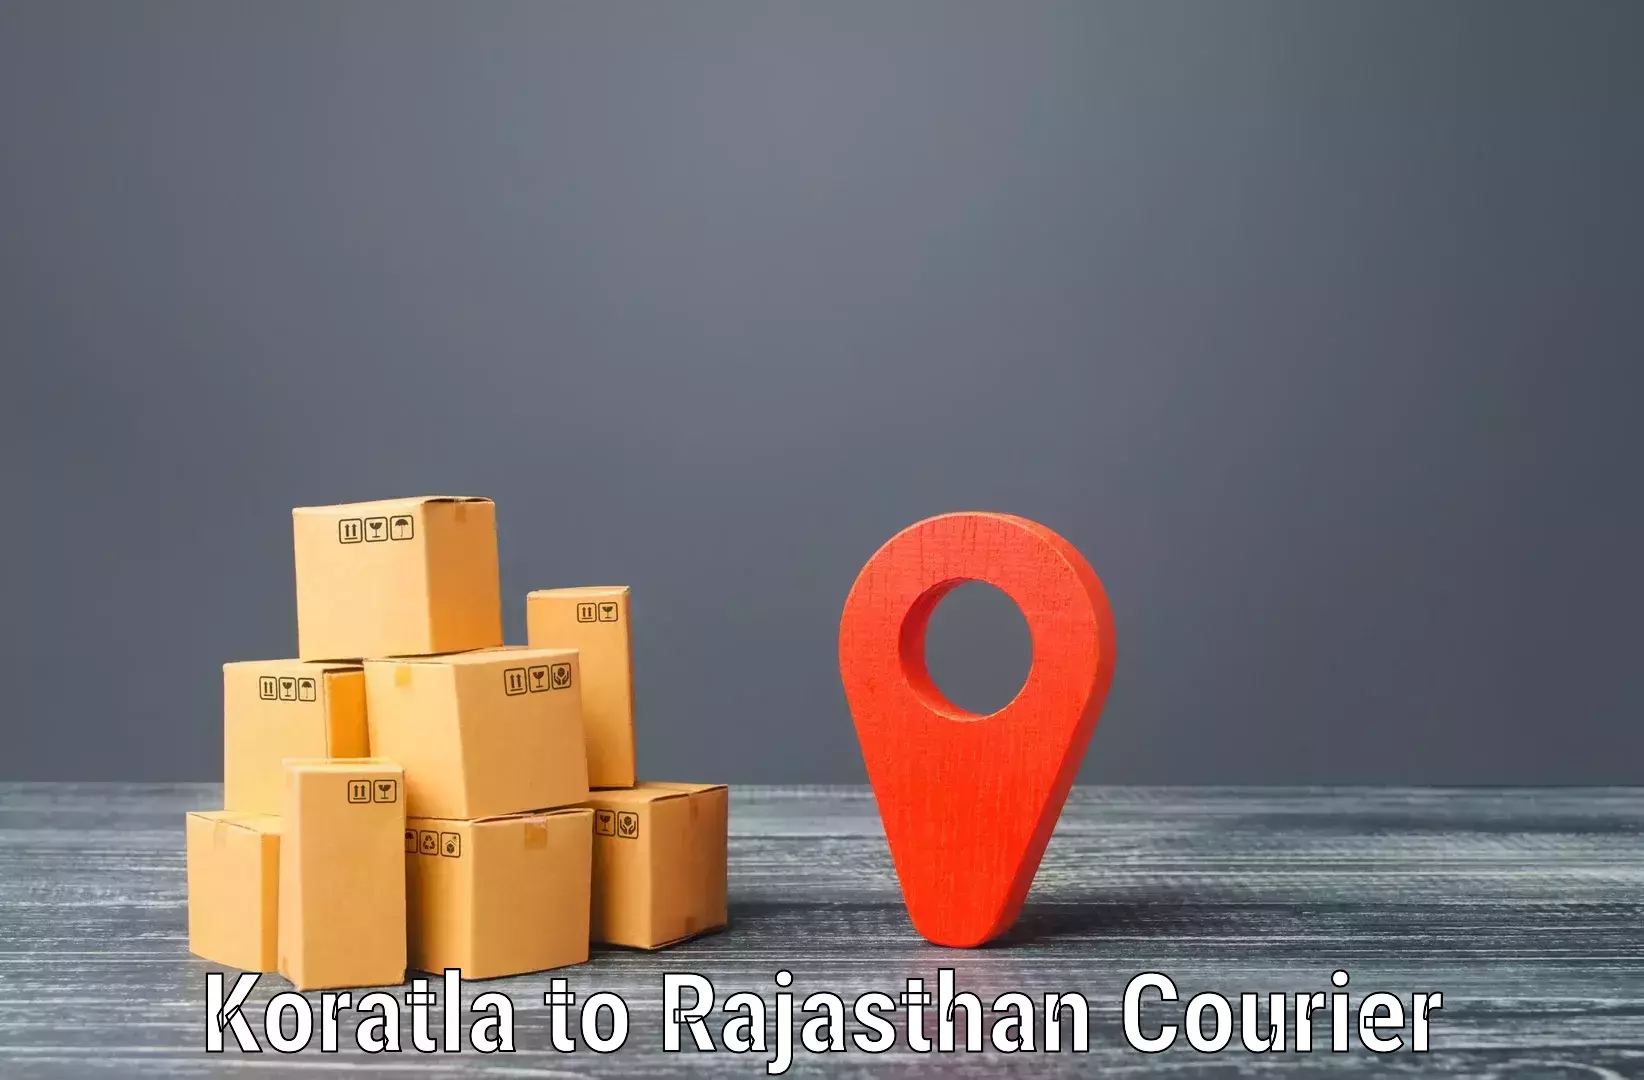 Rural area delivery Koratla to Nawalgarh